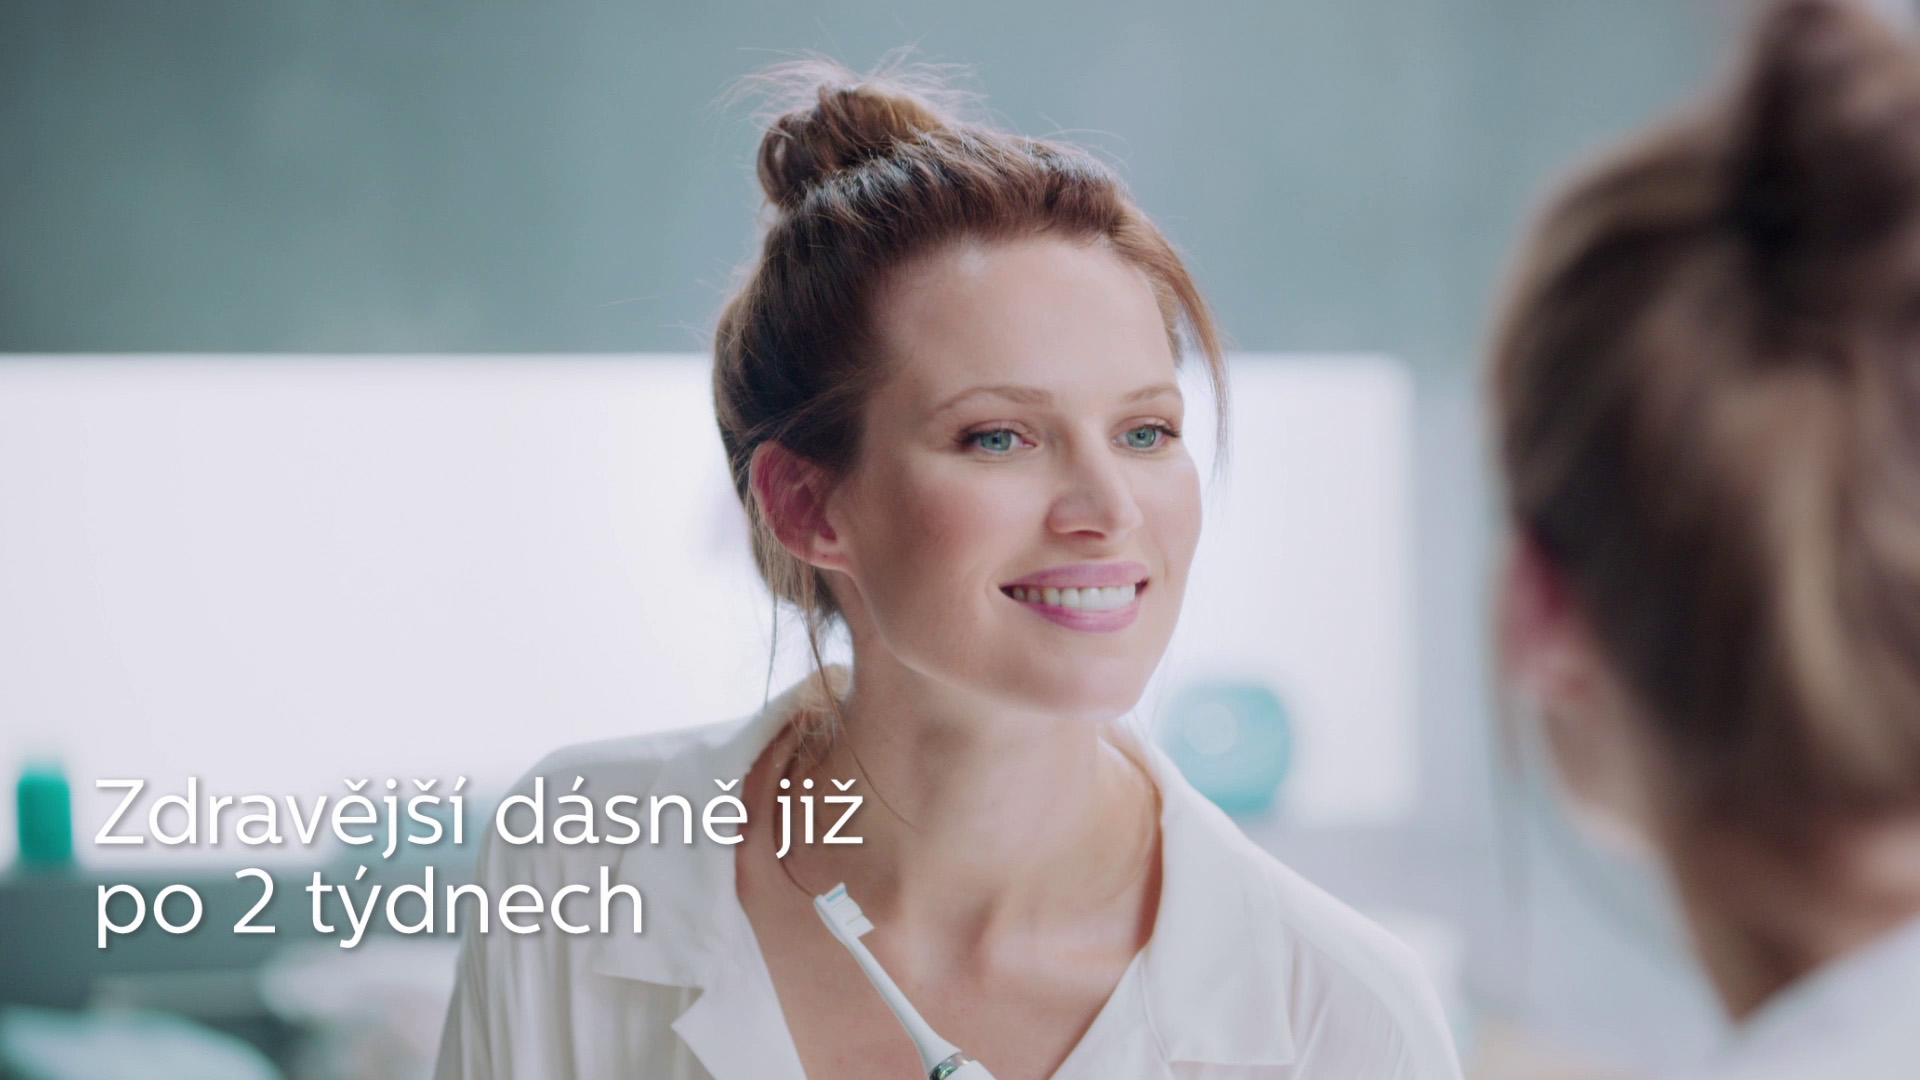 Philips - TV spot na elektrické zubní kartáčky Sonicare